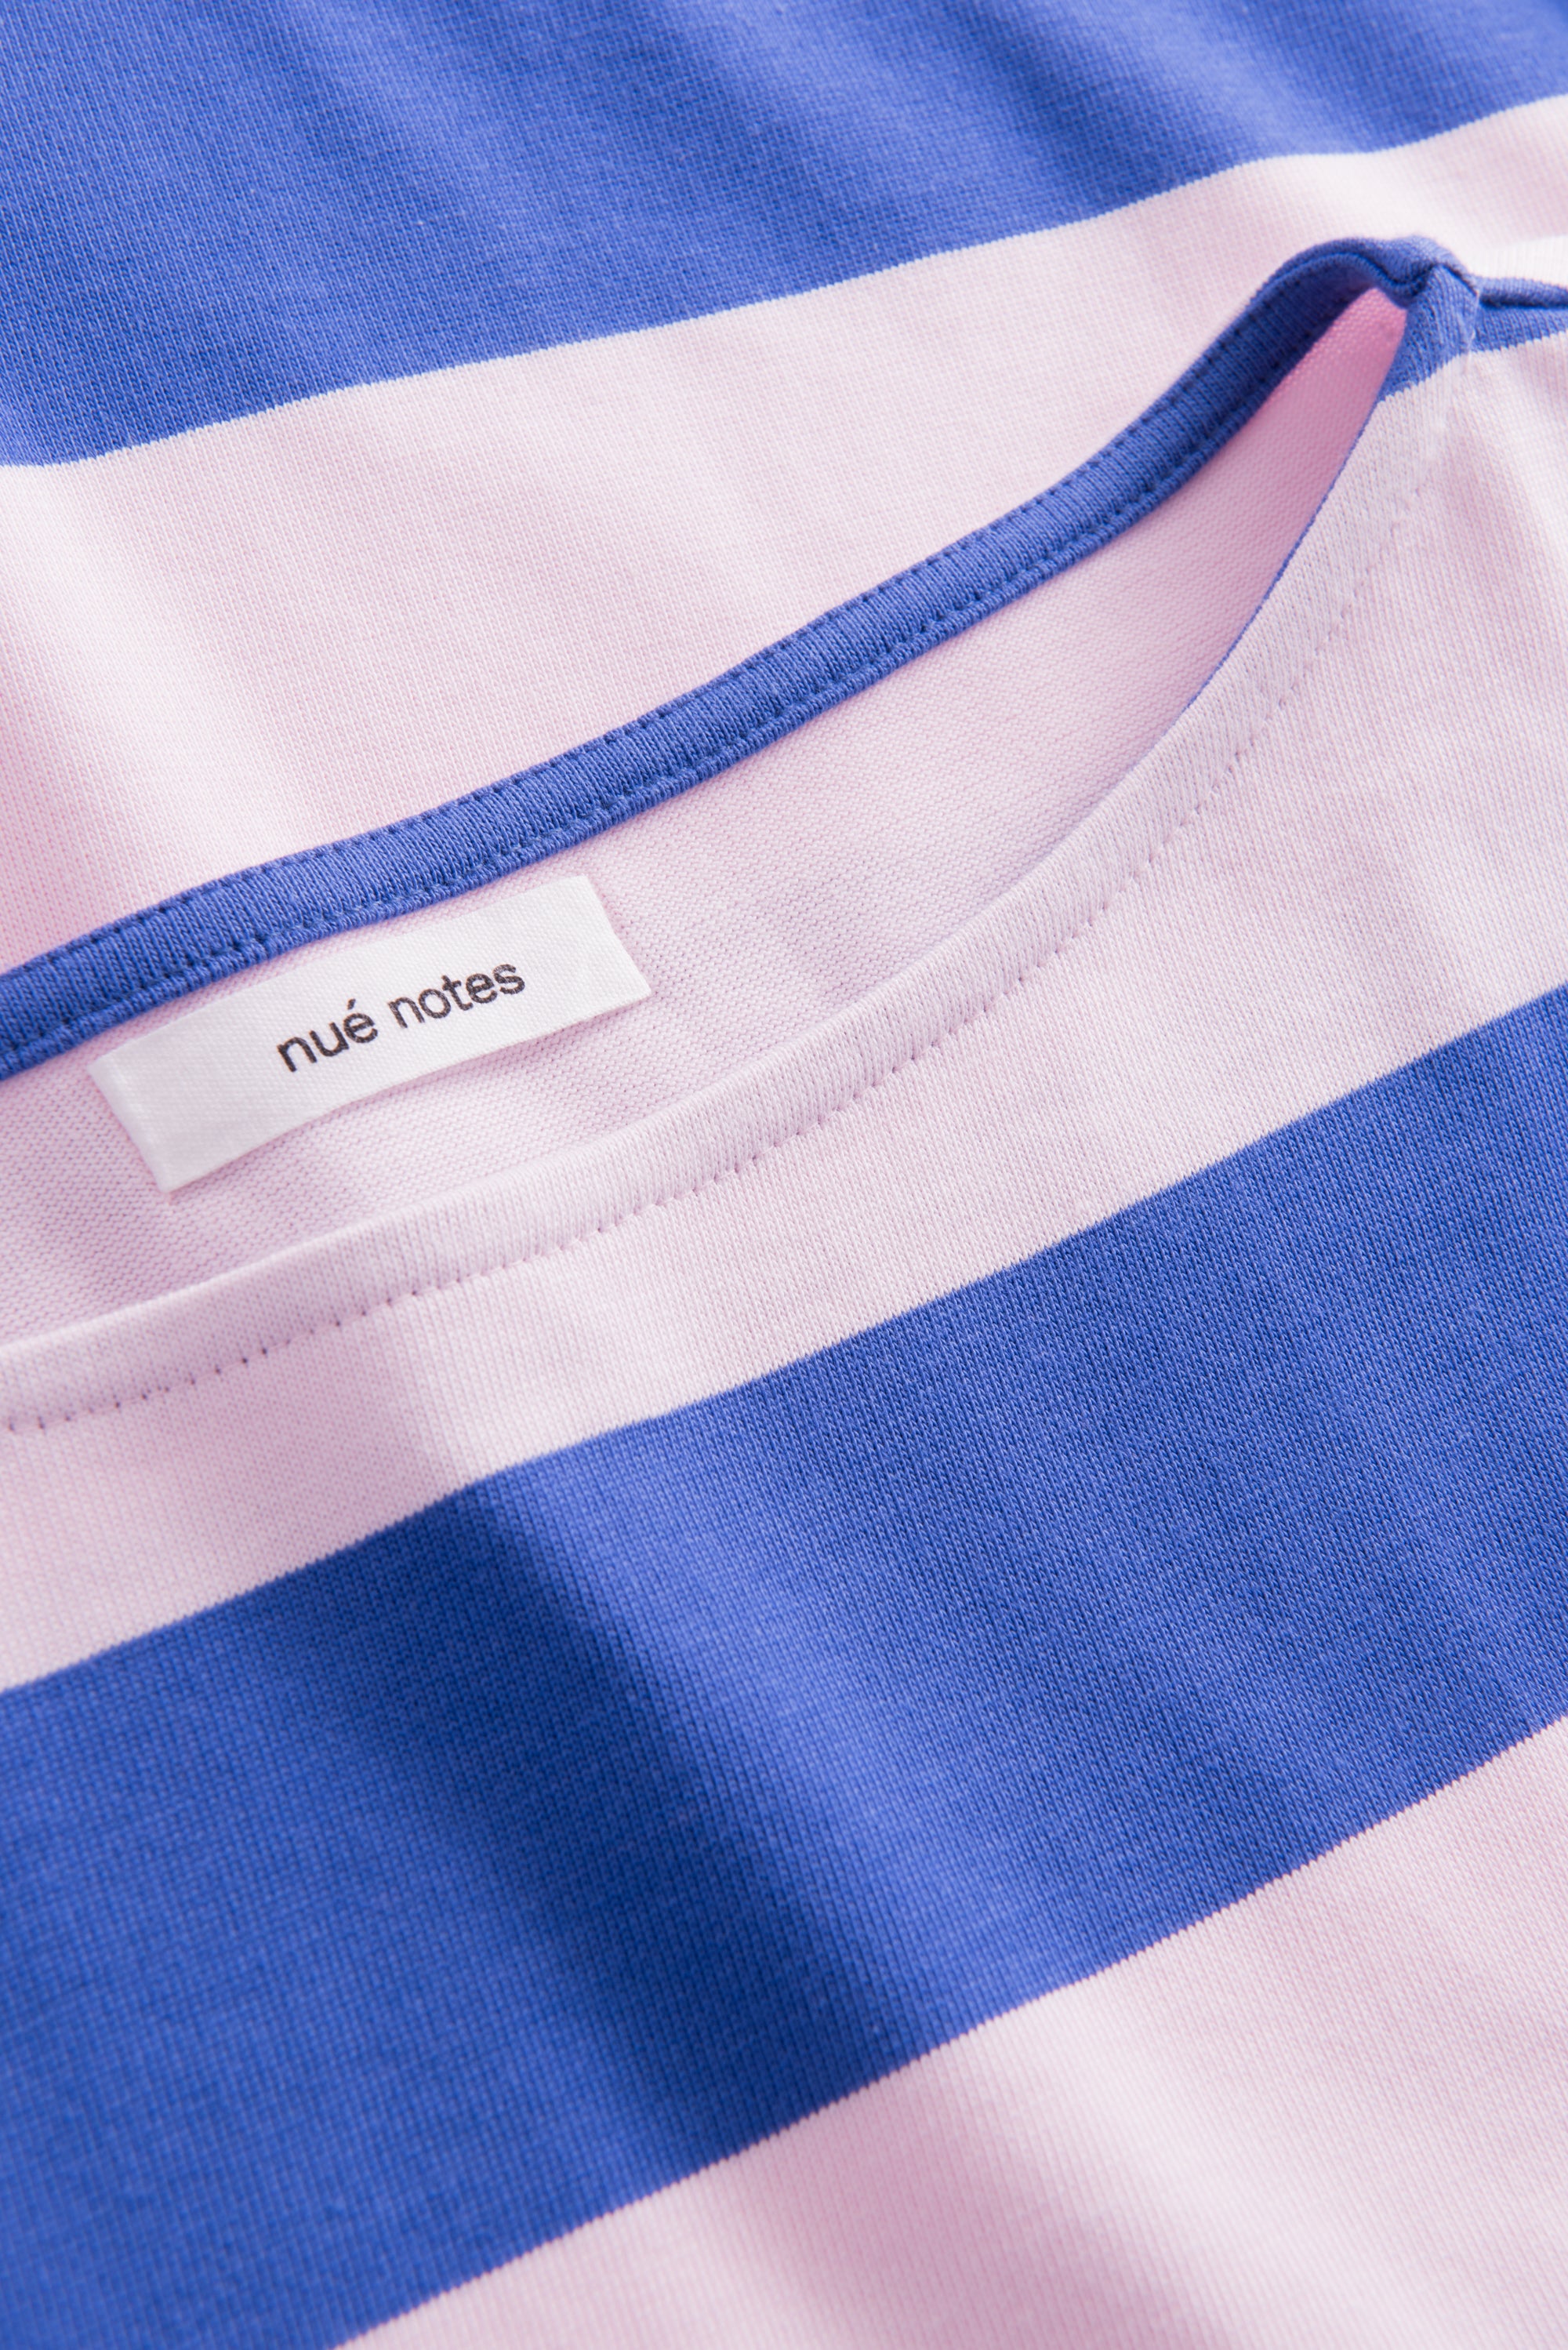 nué notes Seoul t-shirt T-SHIRTS 494 Blue Stripe